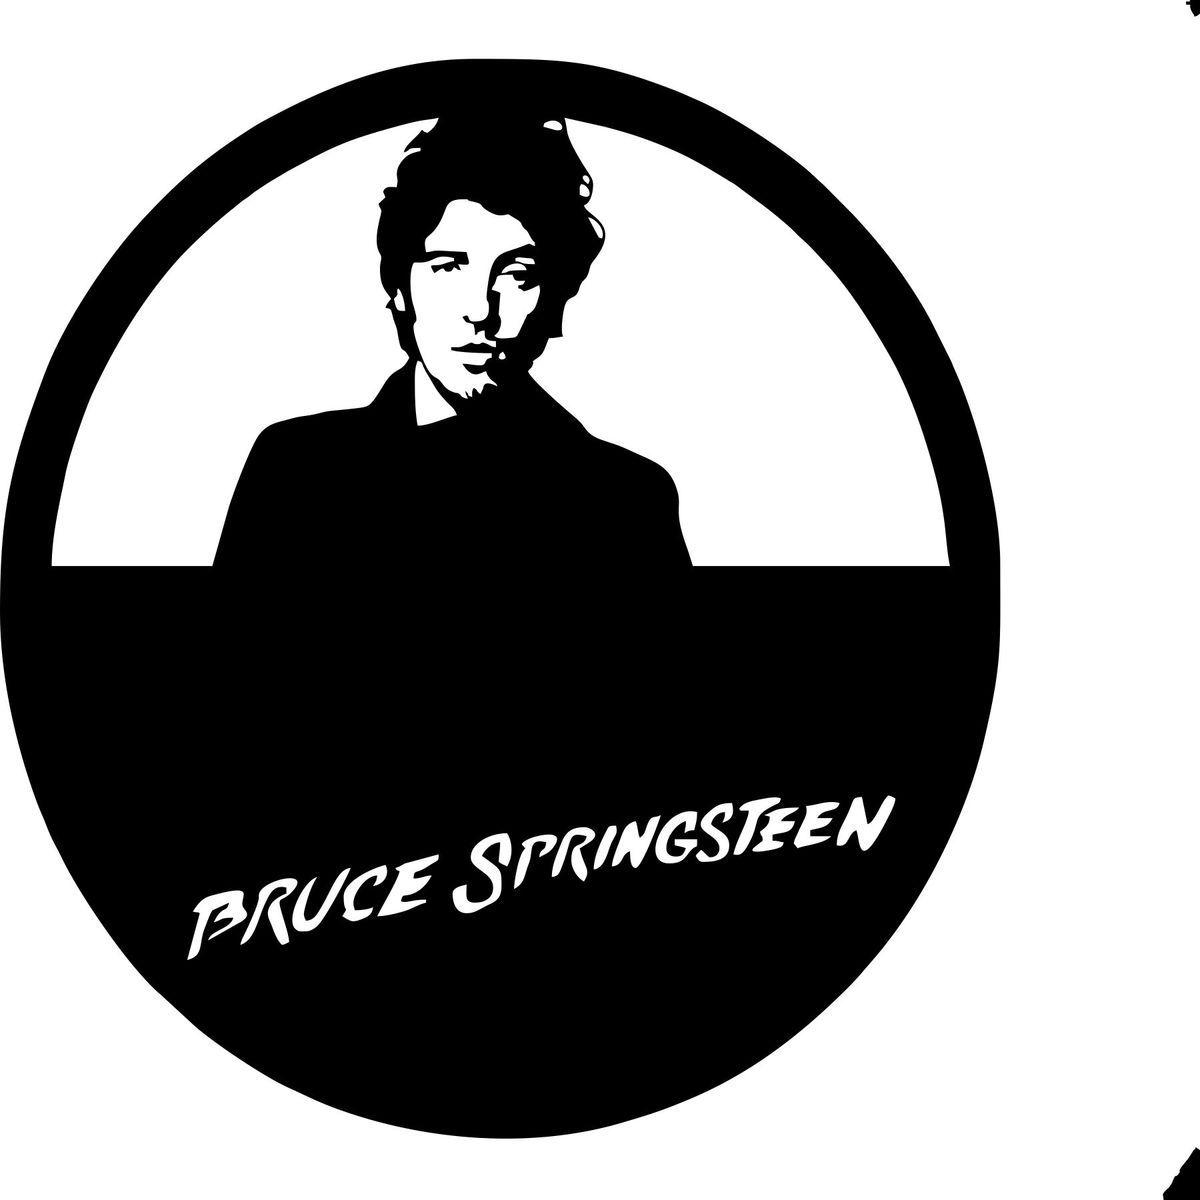 Bruce Springsteen Logo - bruce springsteen-3 Laser Cut Vinyl Record artist representation ...